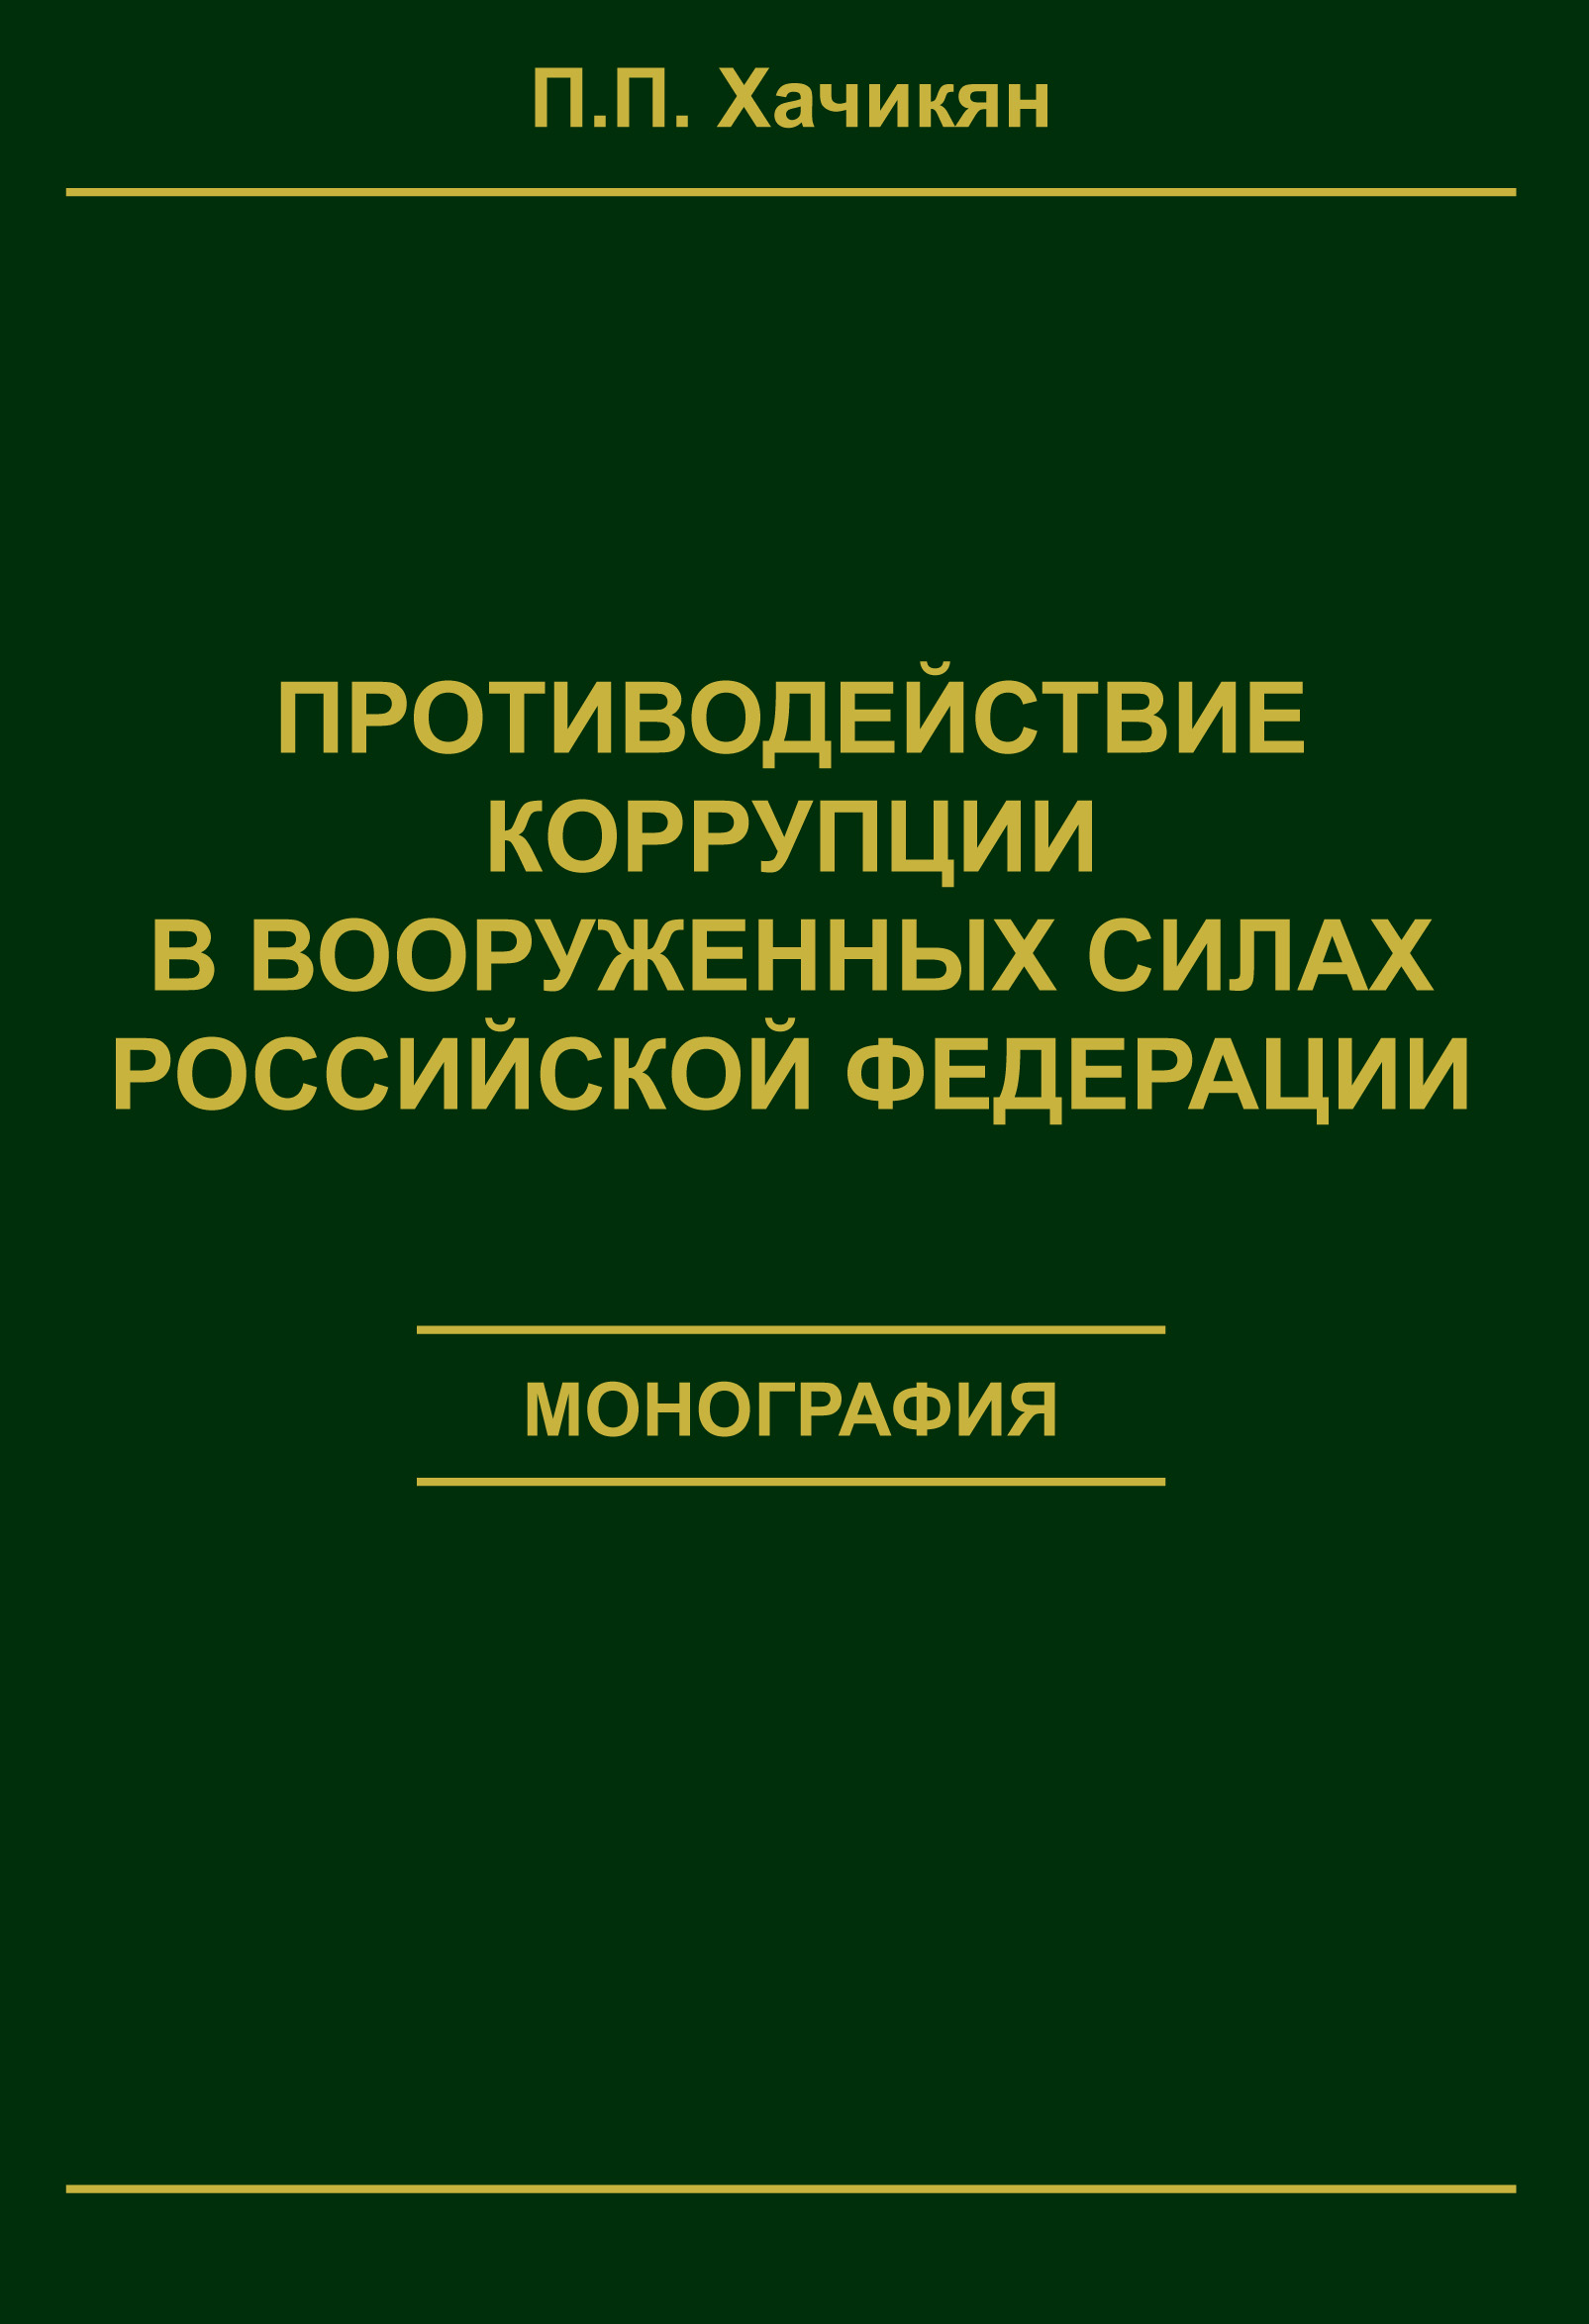 Противодействие коррупции в вооруженных силах Российской Федерации